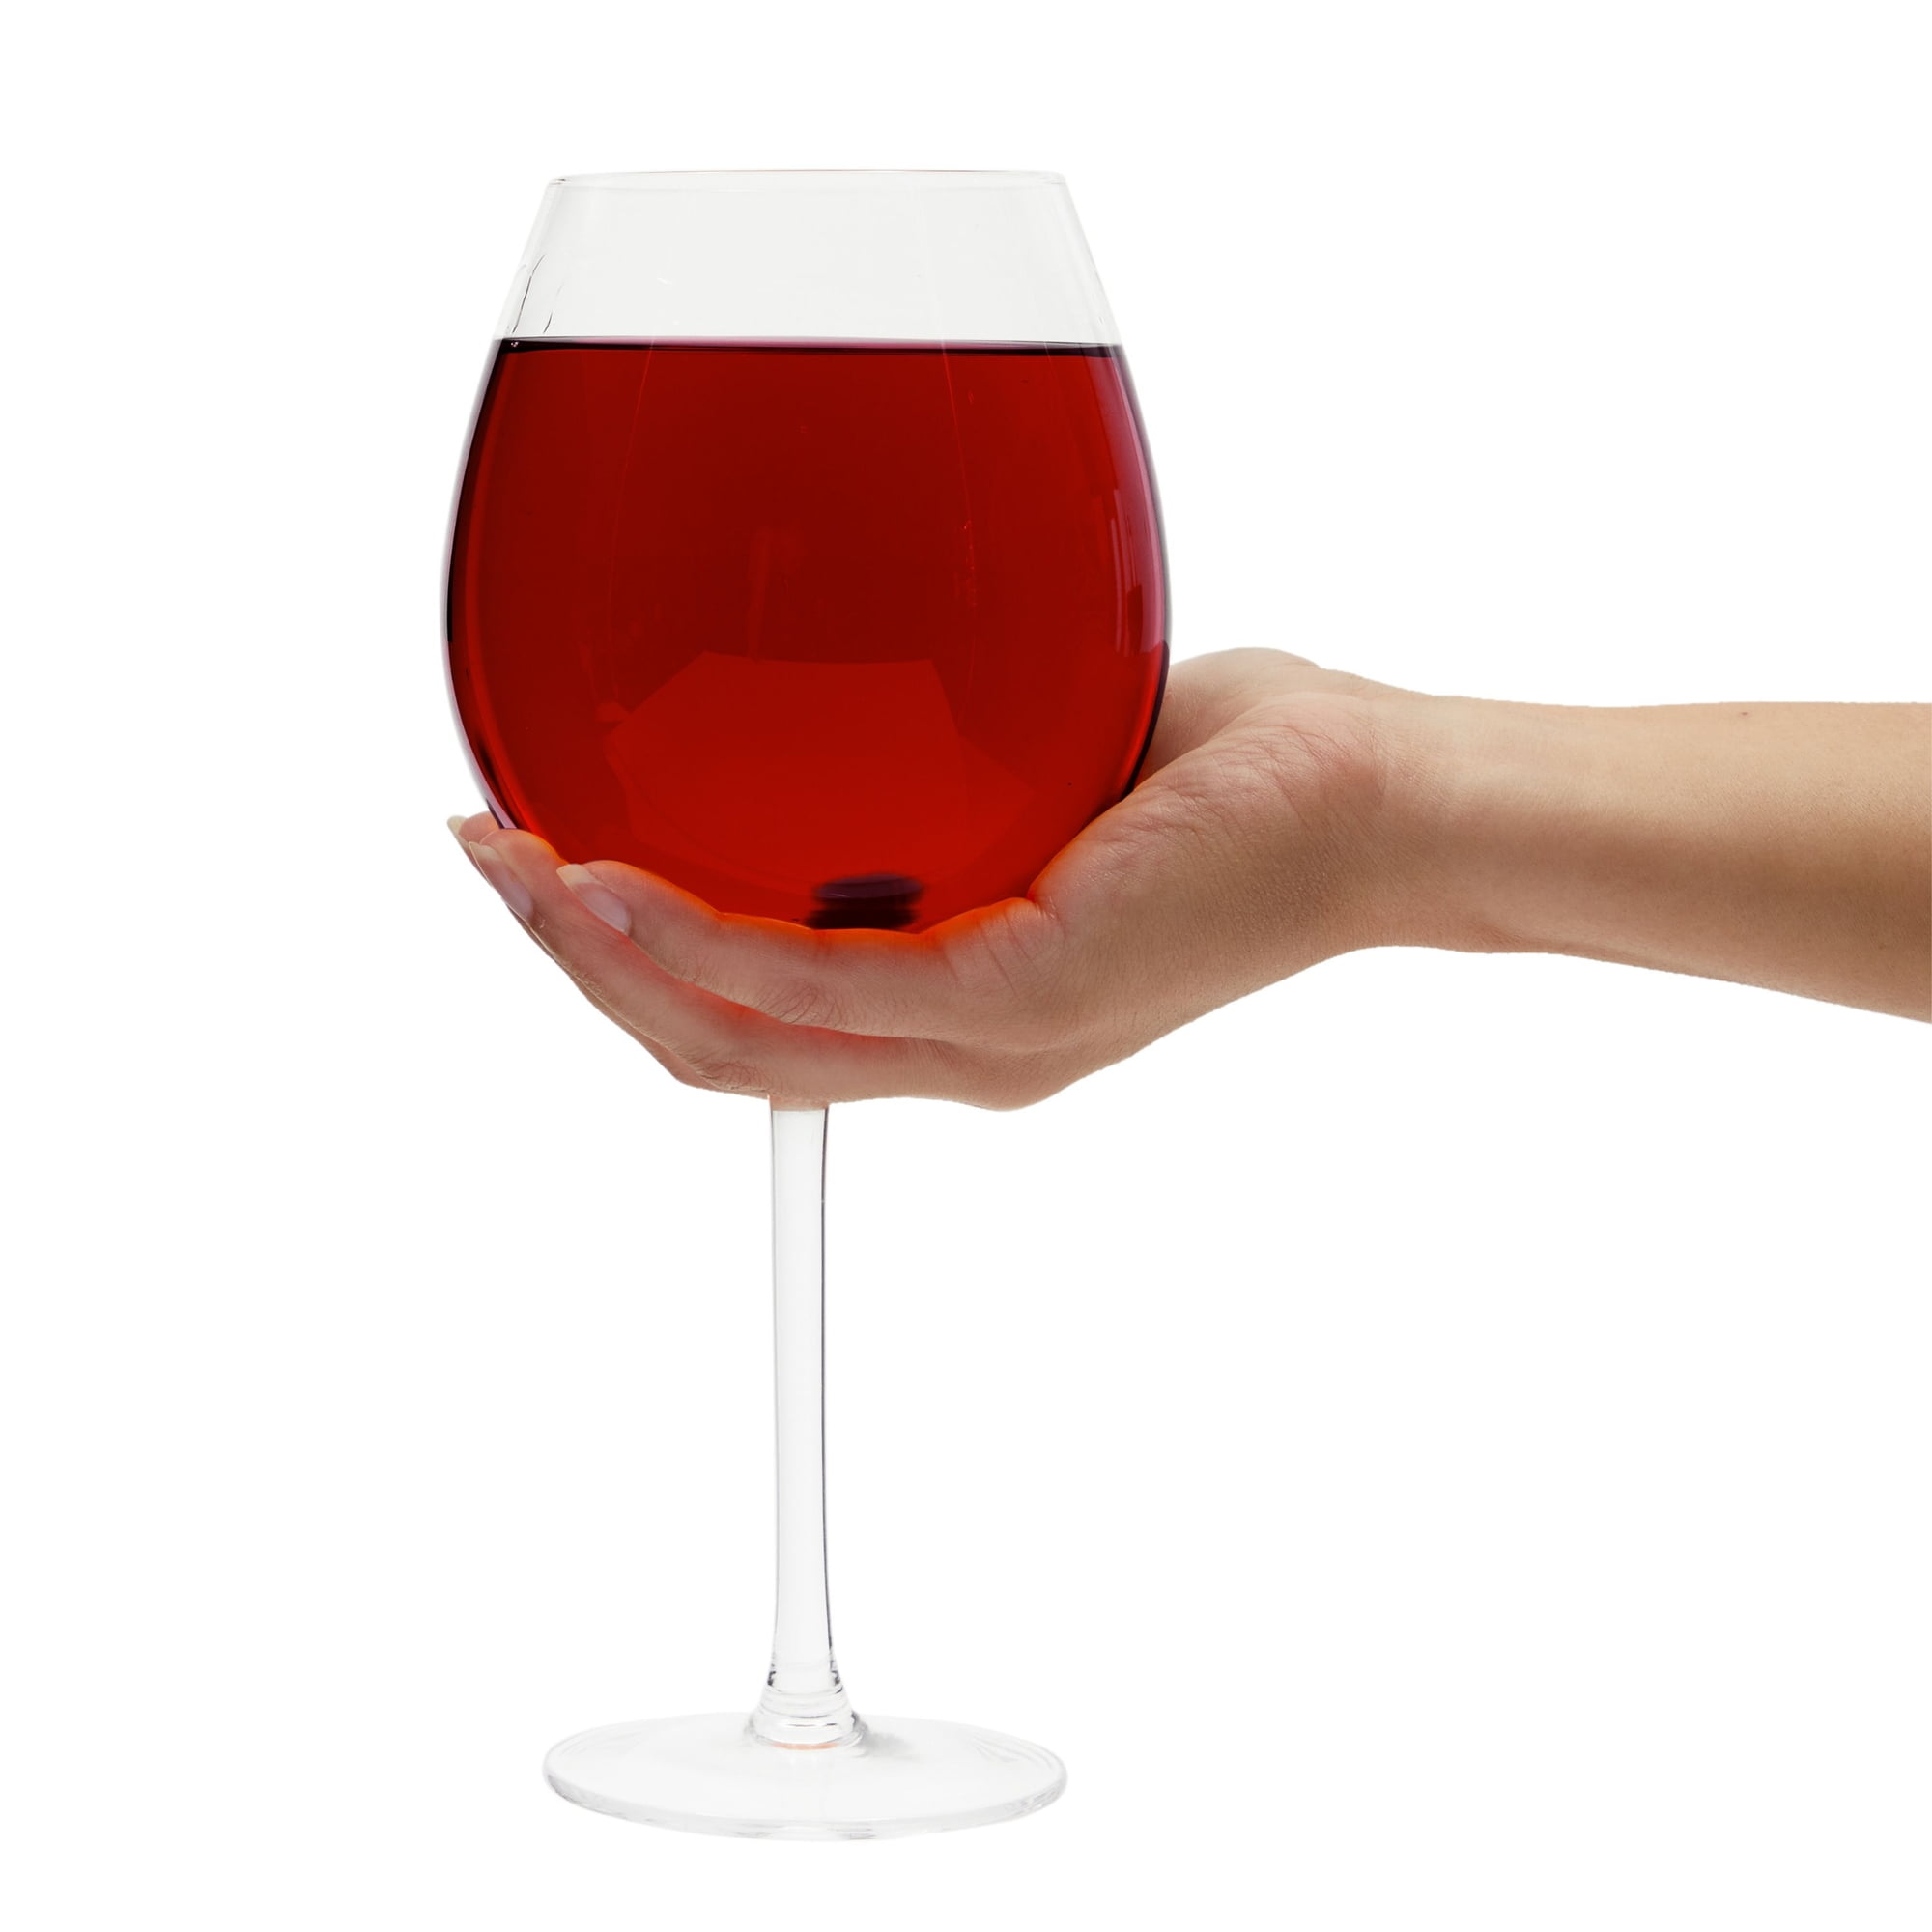 DCI XL Wine Glass 750ml Holds Full Bottle of Wine 25 fl oz